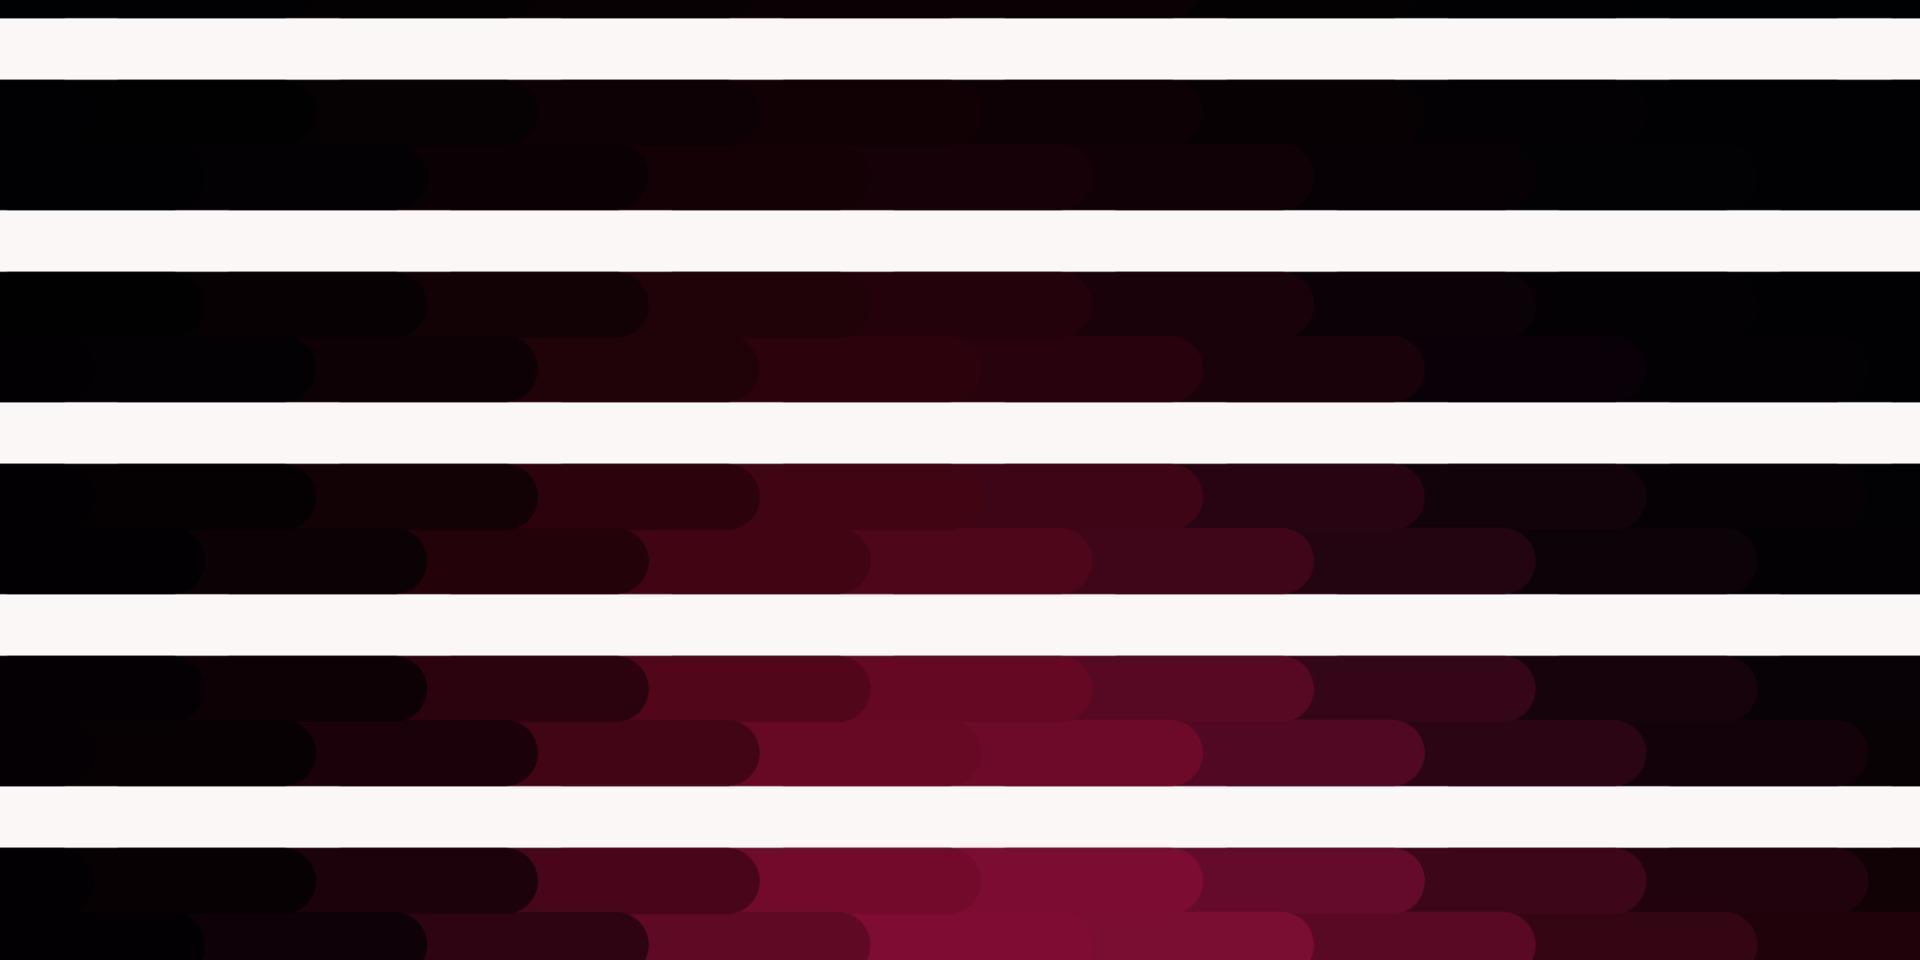 mörkrosa vektorbakgrund med linjer. vektor